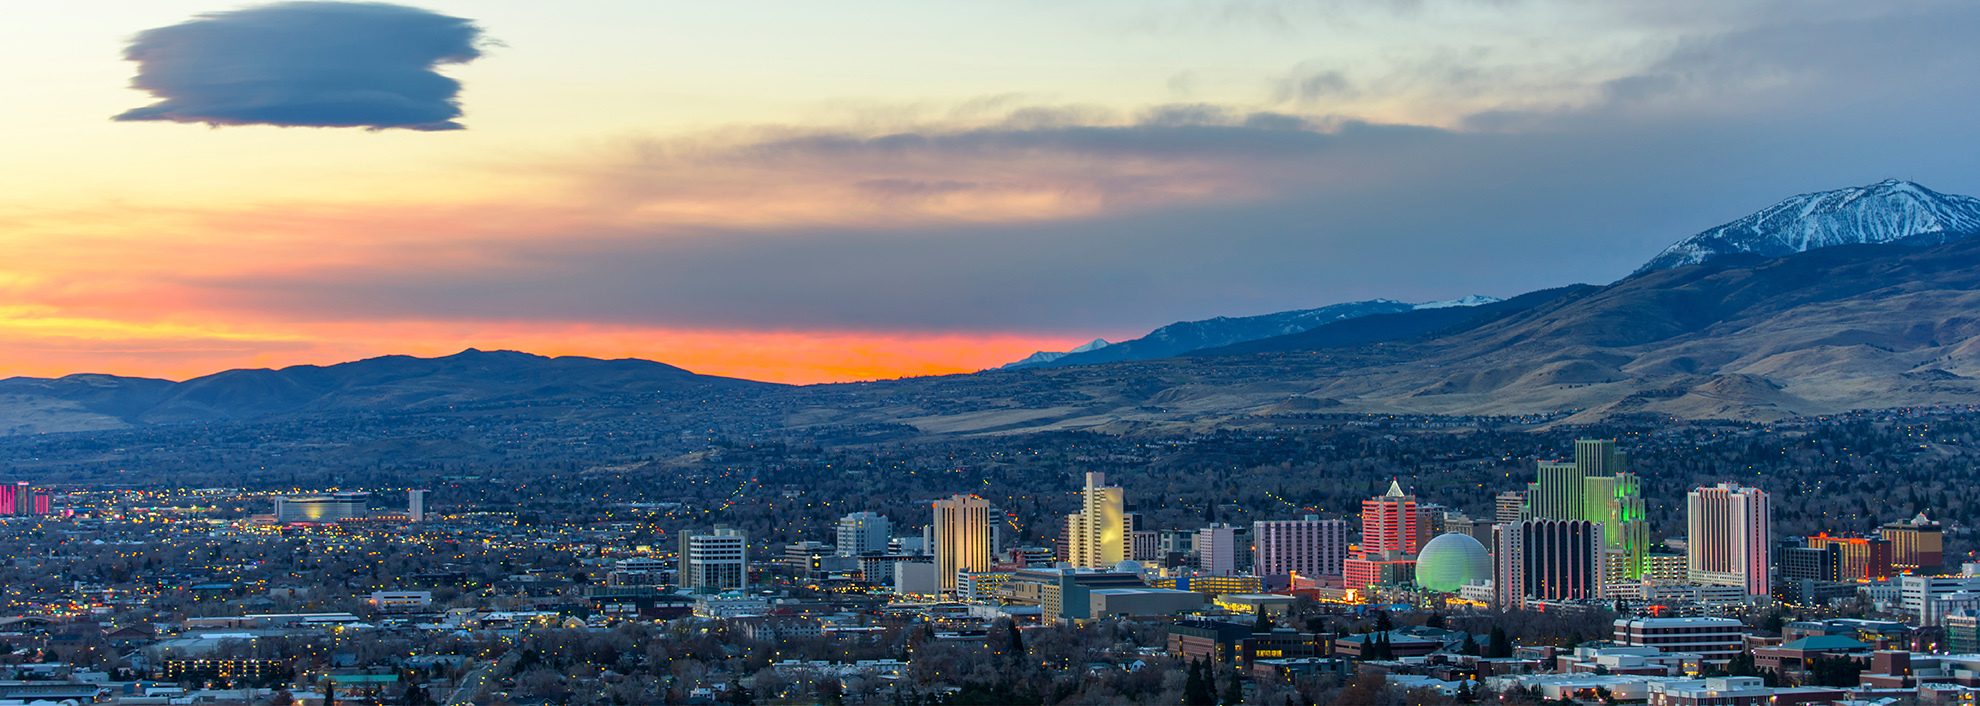 Dawn in Reno, Nevada